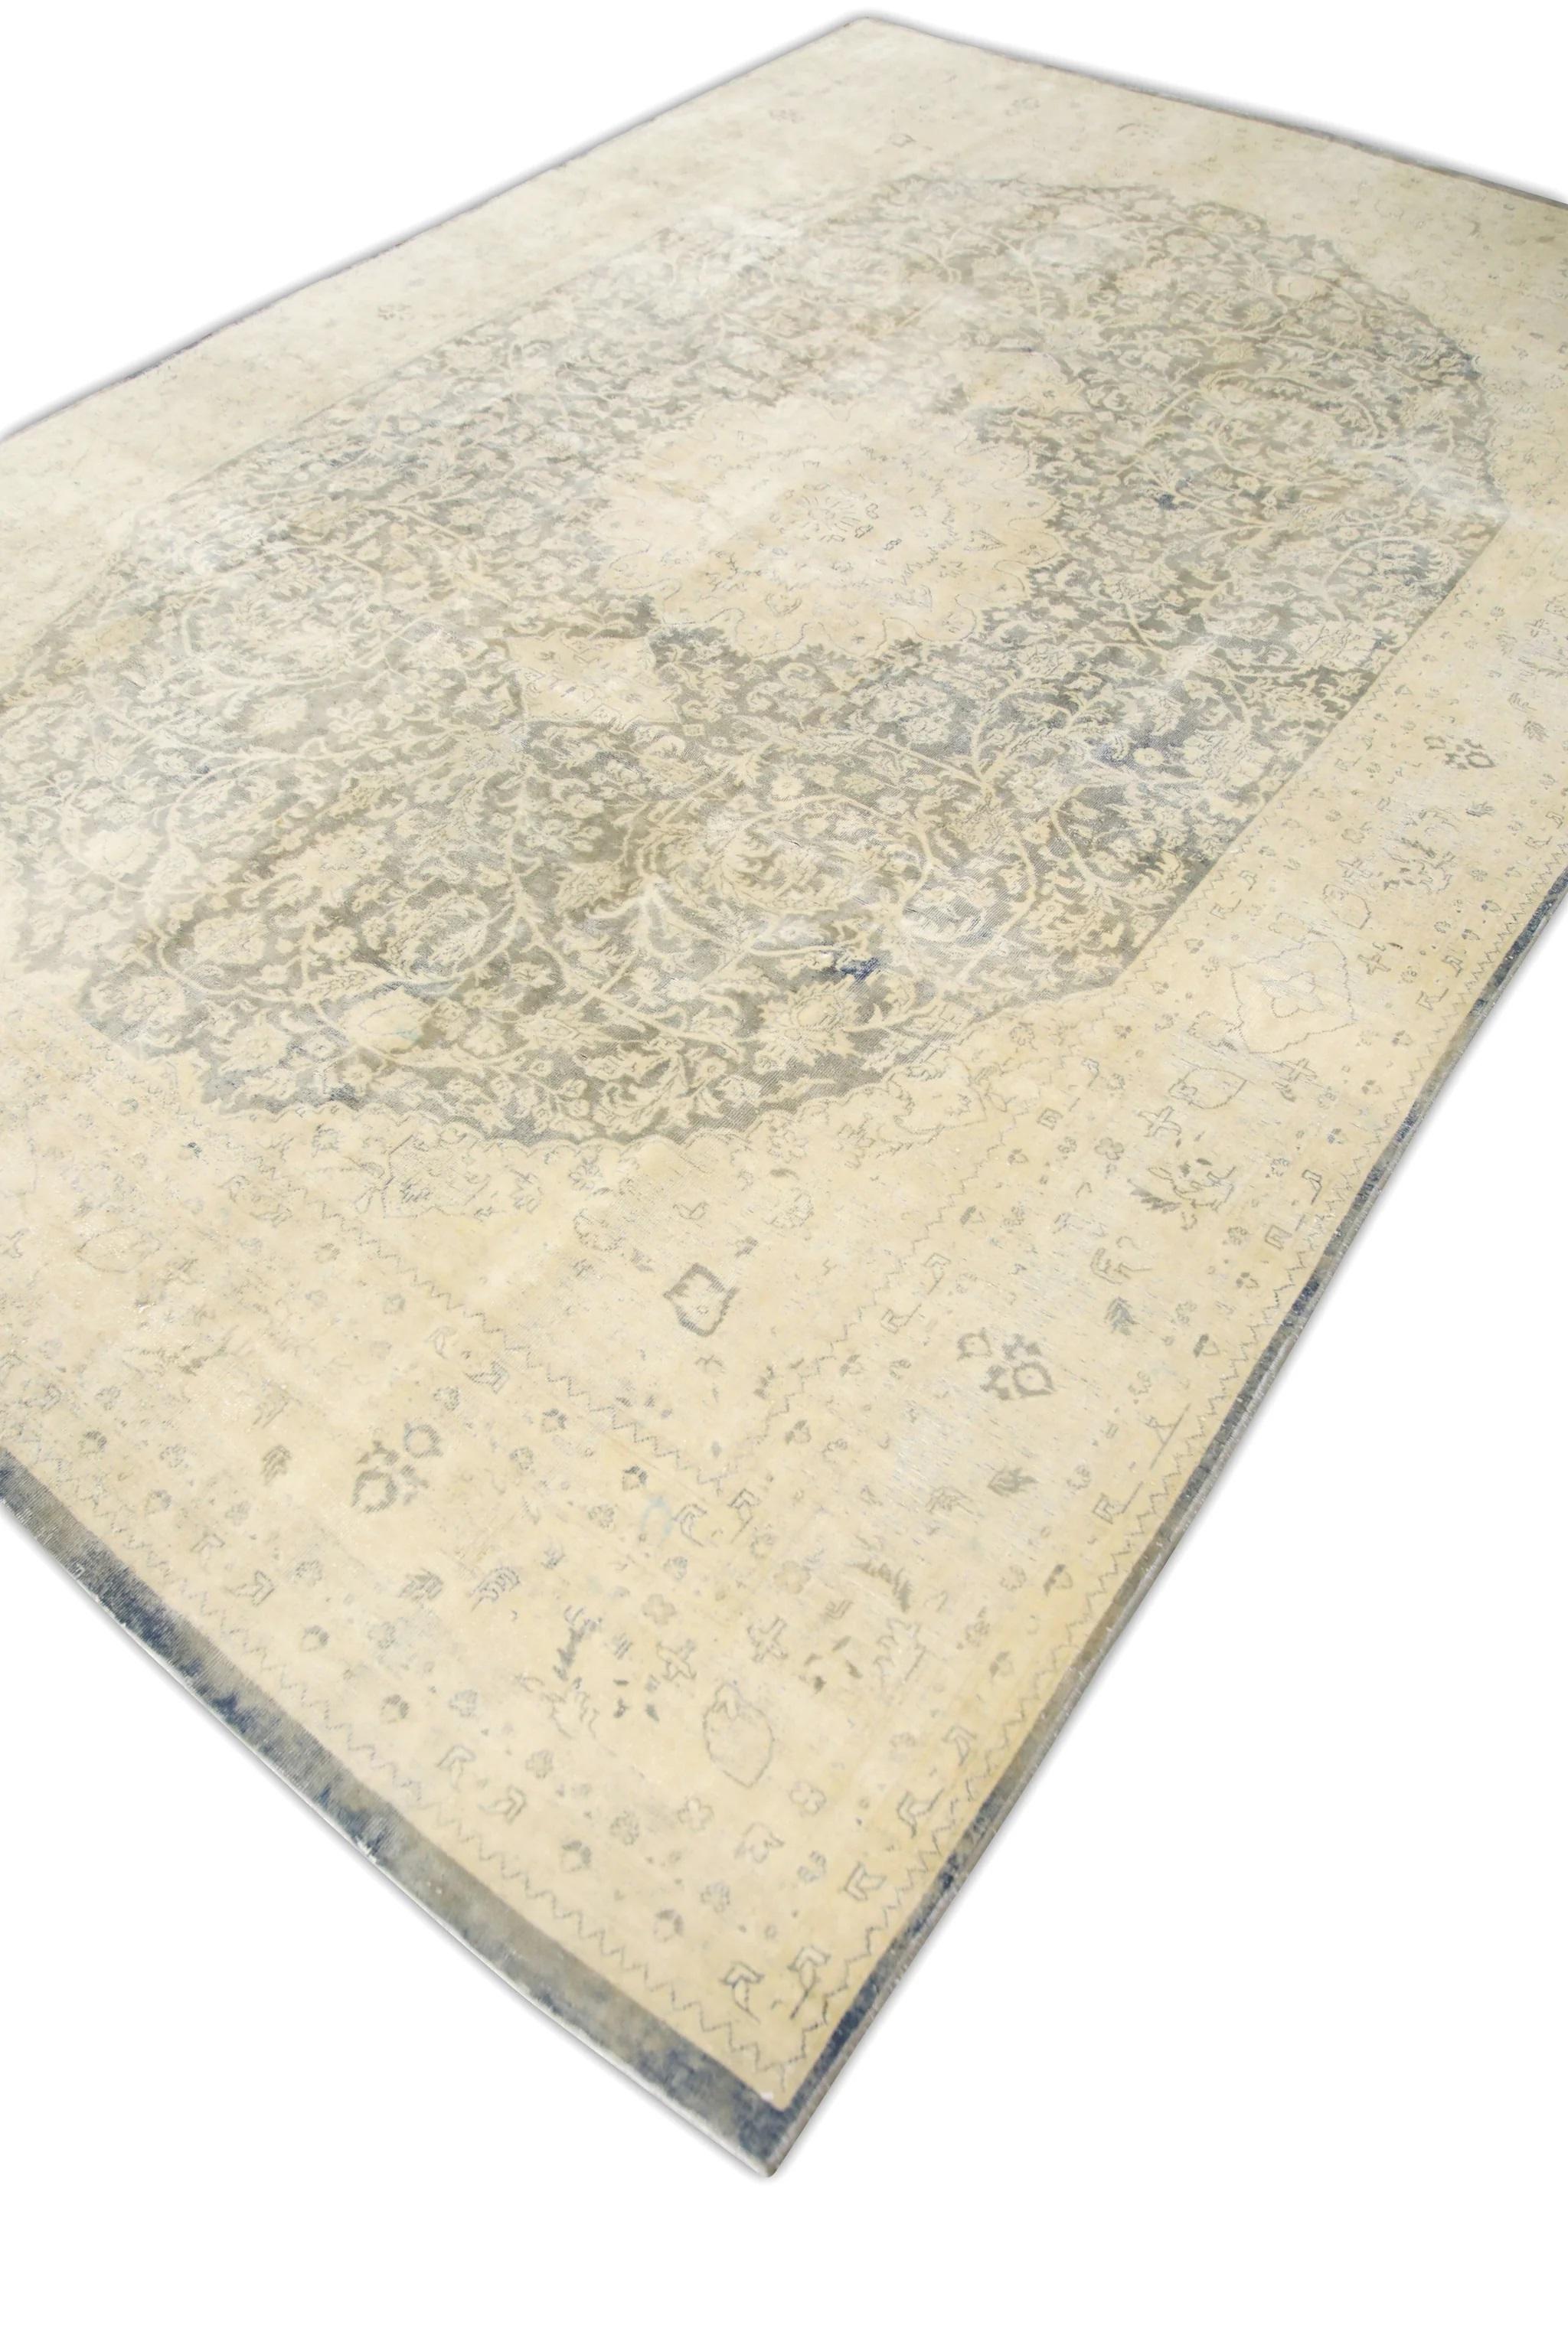 Cet exquis tapis Oushak turc vintage est un exemple stupéfiant de savoir-faire traditionnel et de beauté intemporelle. Noué à la main à partir de fibres de laine de qualité supérieure, ce tapis présente des motifs complexes et des couleurs vives qui